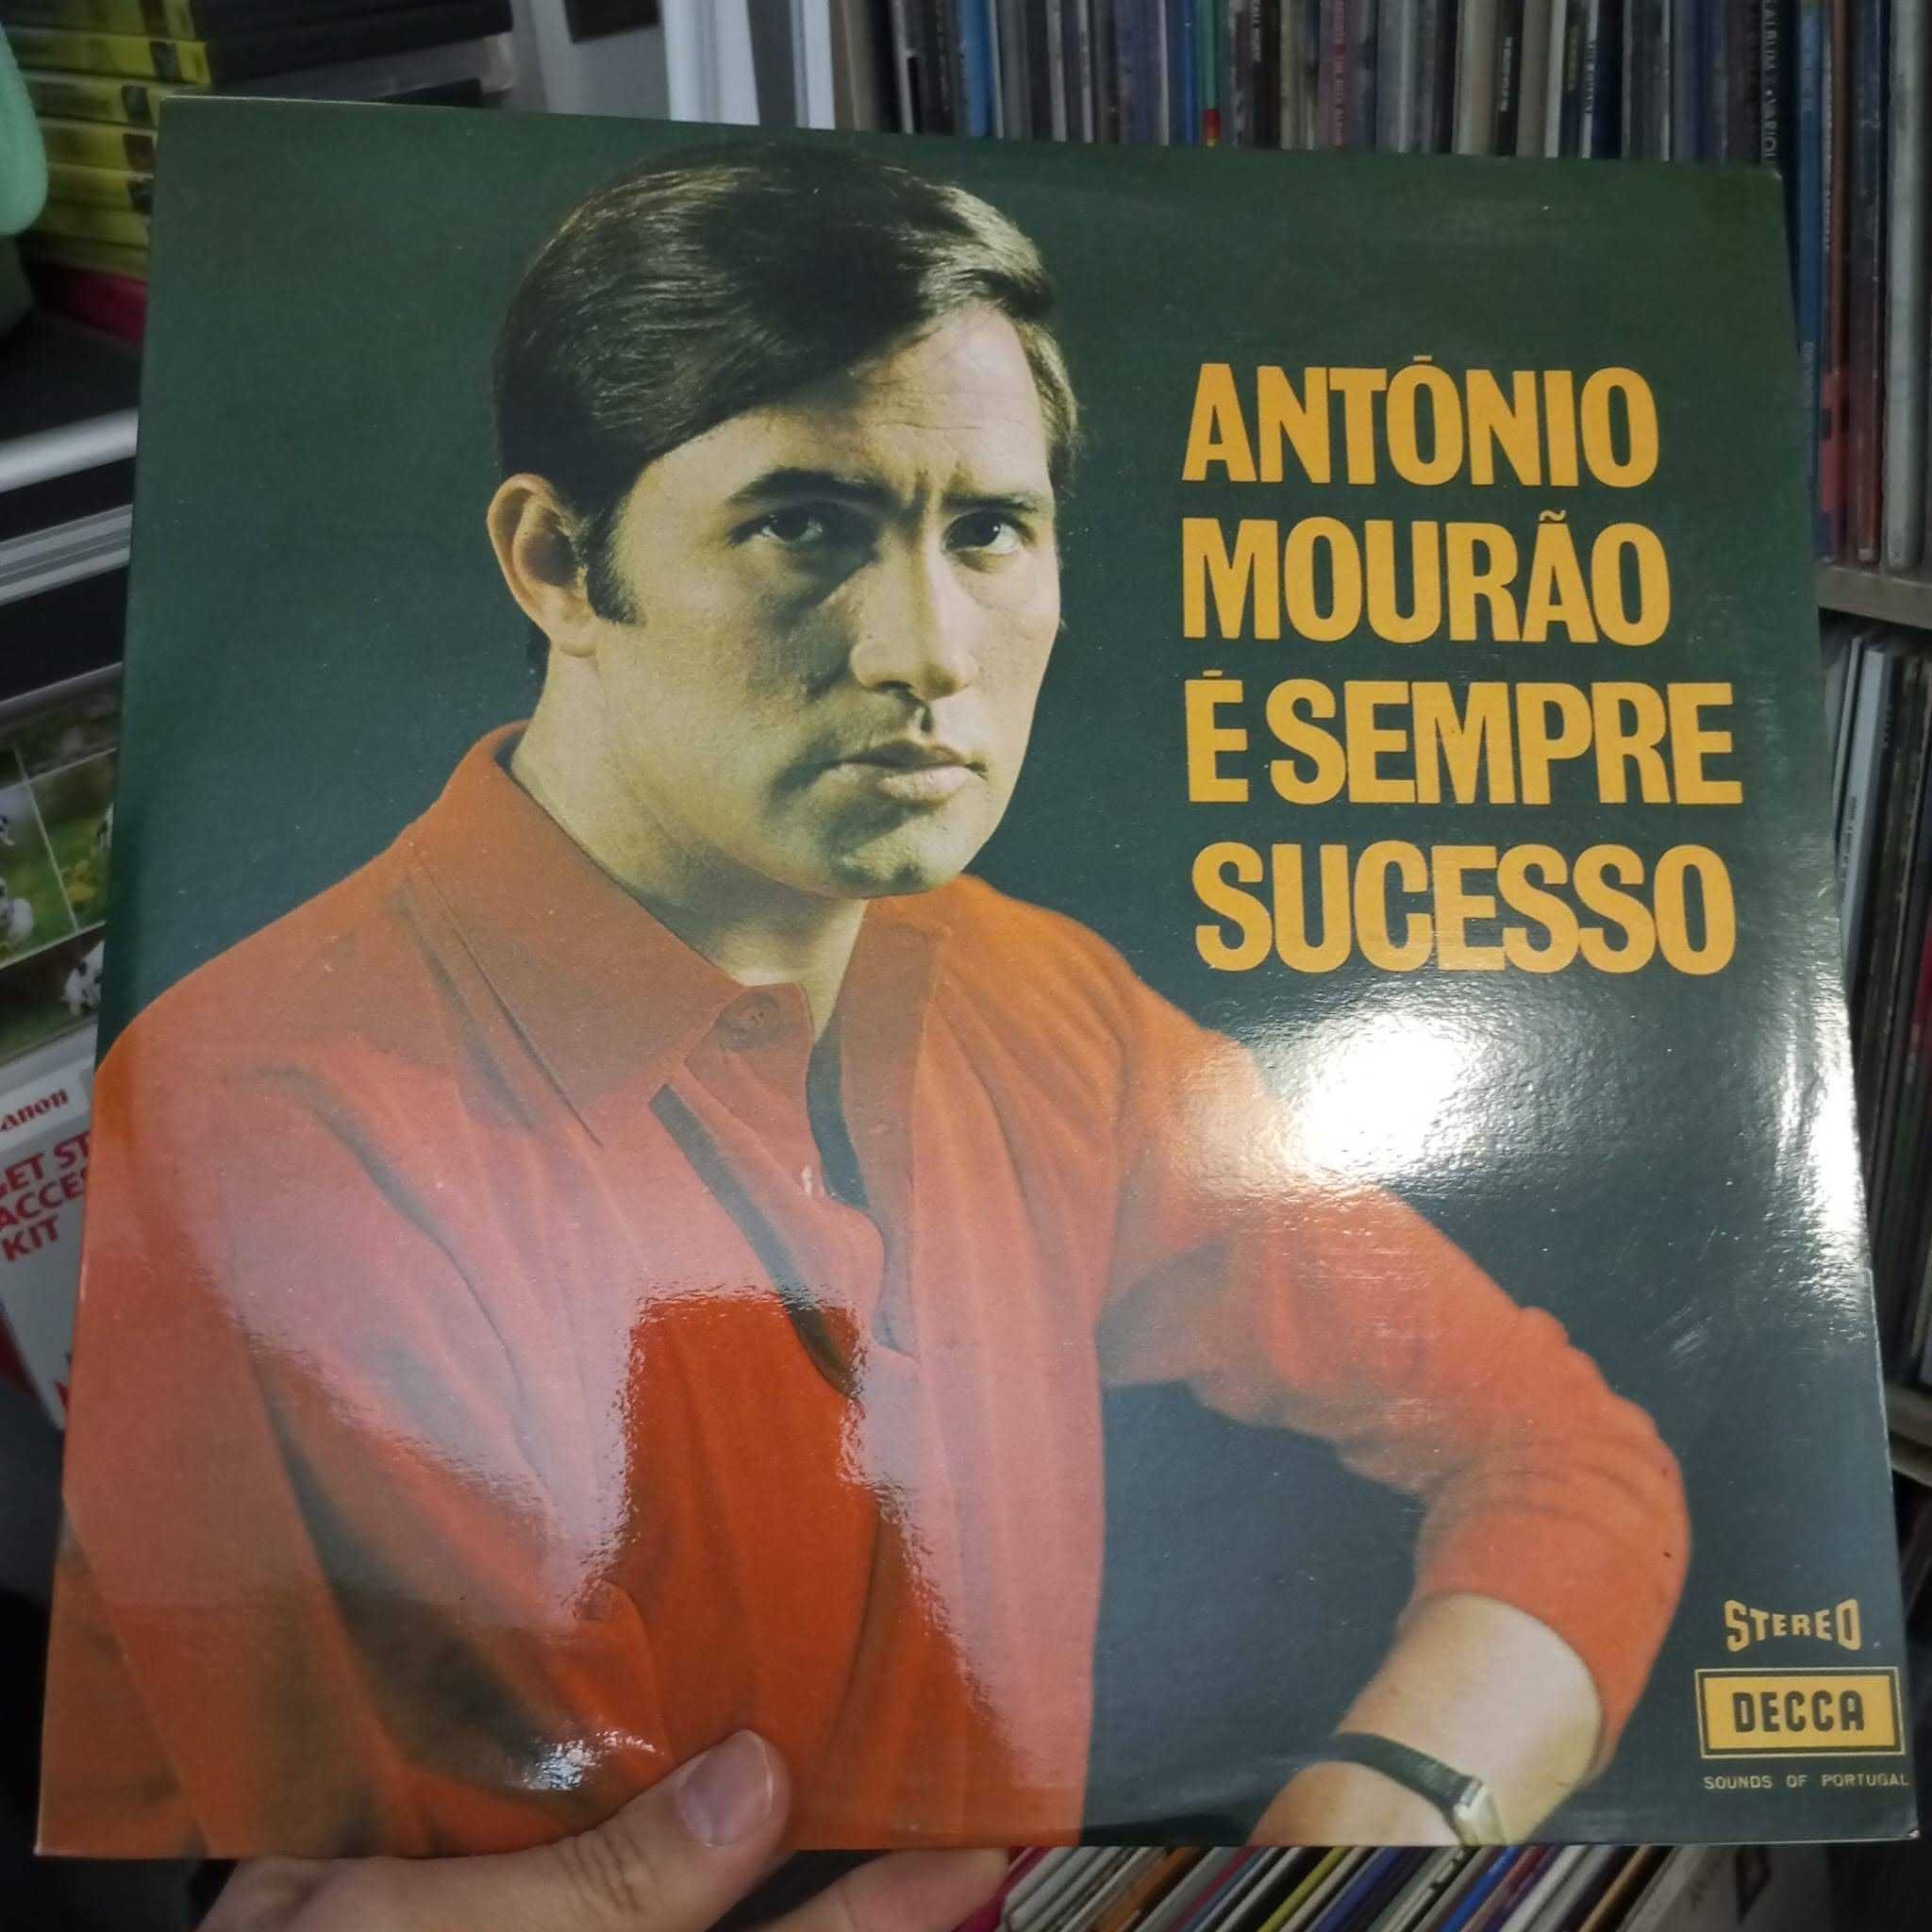 Discos de Vinil de António Mourão (fadista português)